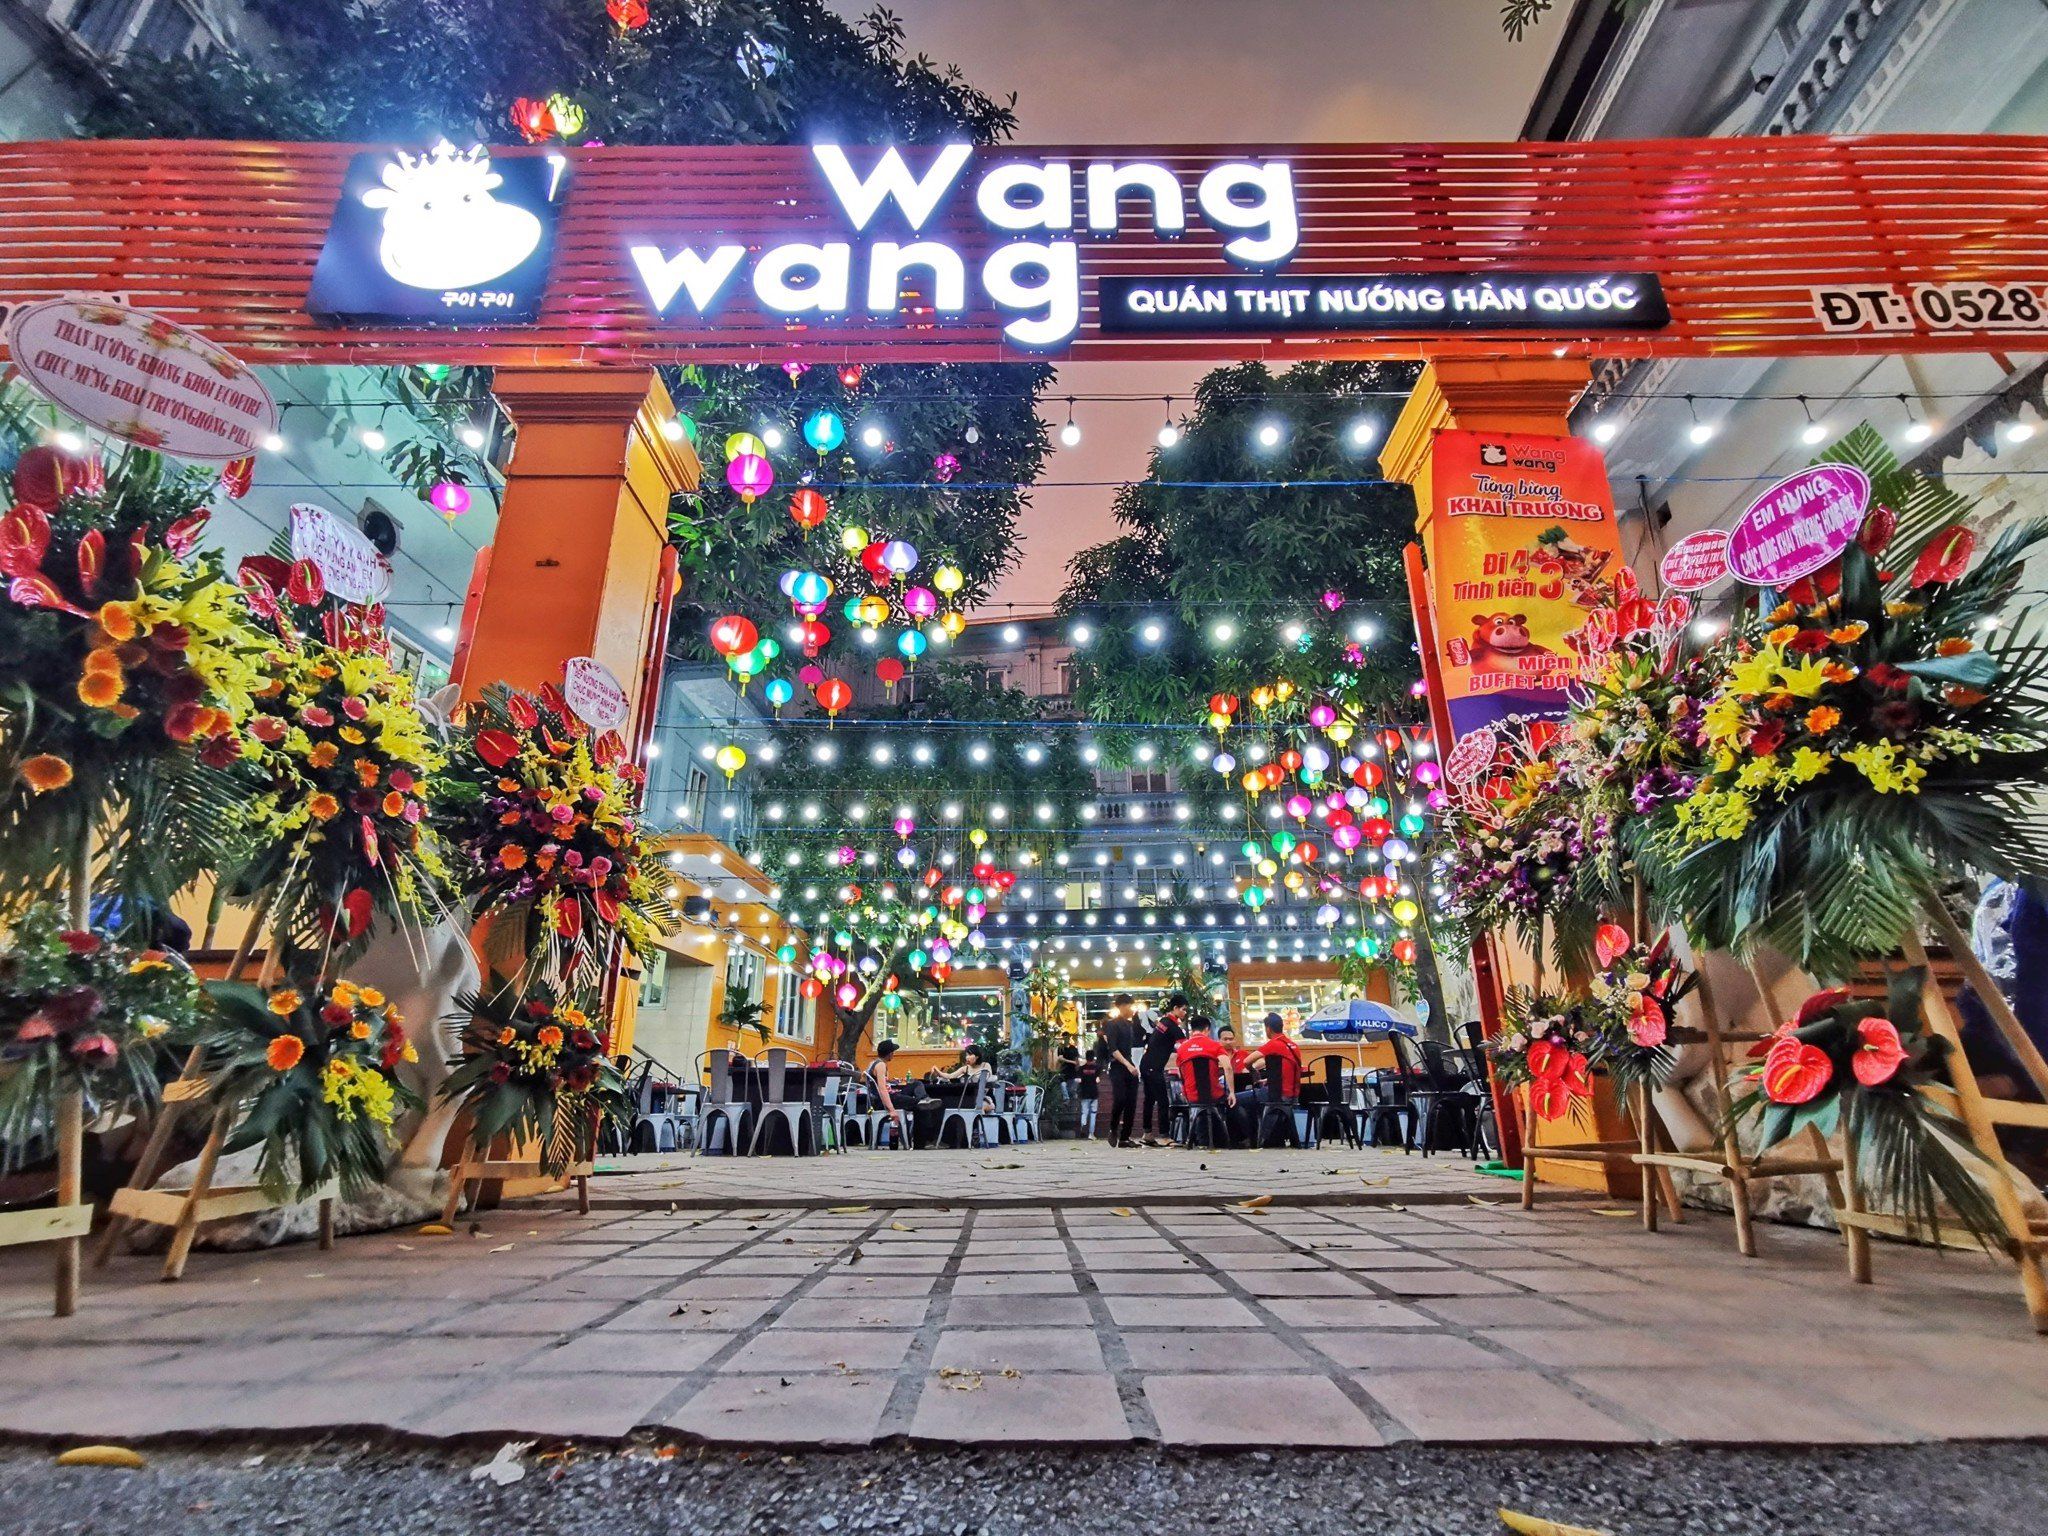 Lẩu Nướng Wang Wang - Triều Khúc